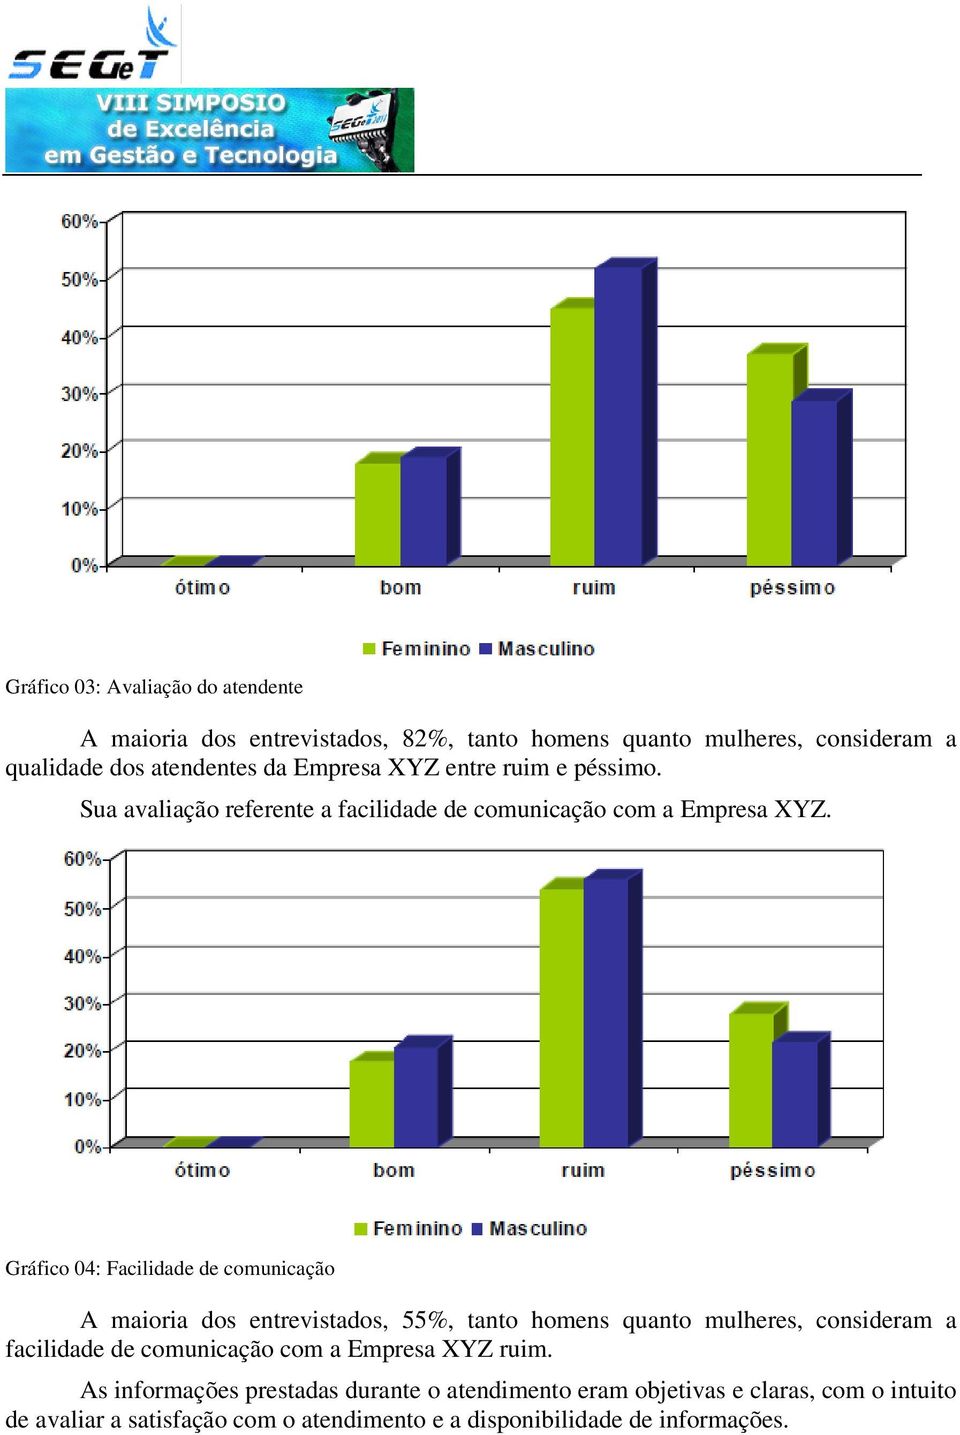 Gráfico 04: Facilidade de comunicação A maioria dos entrevistados, 55%, tanto homens quanto mulheres, consideram a facilidade de comunicação